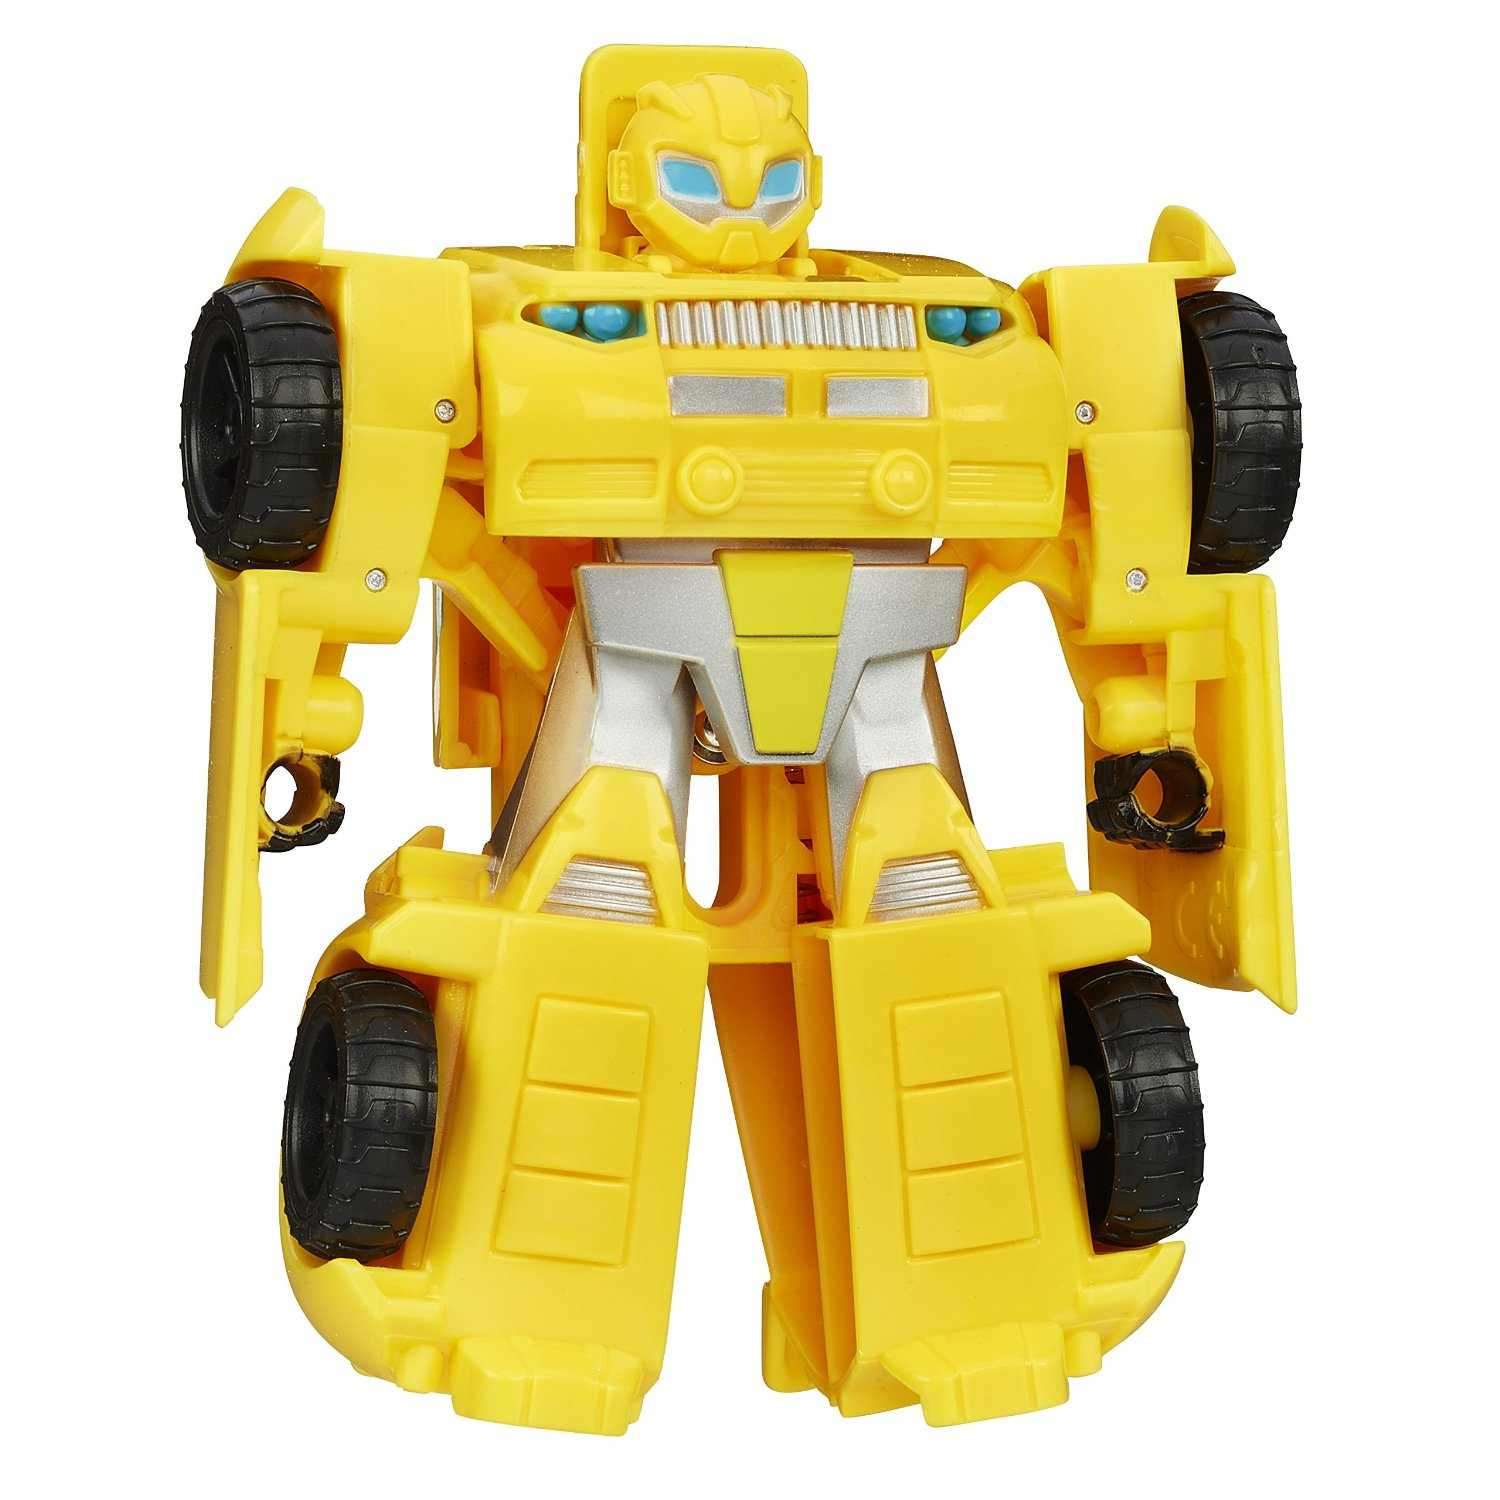 Đồ chơi Robot Transformer Rescue Bots Bumblebee Figure biến hình ô tô